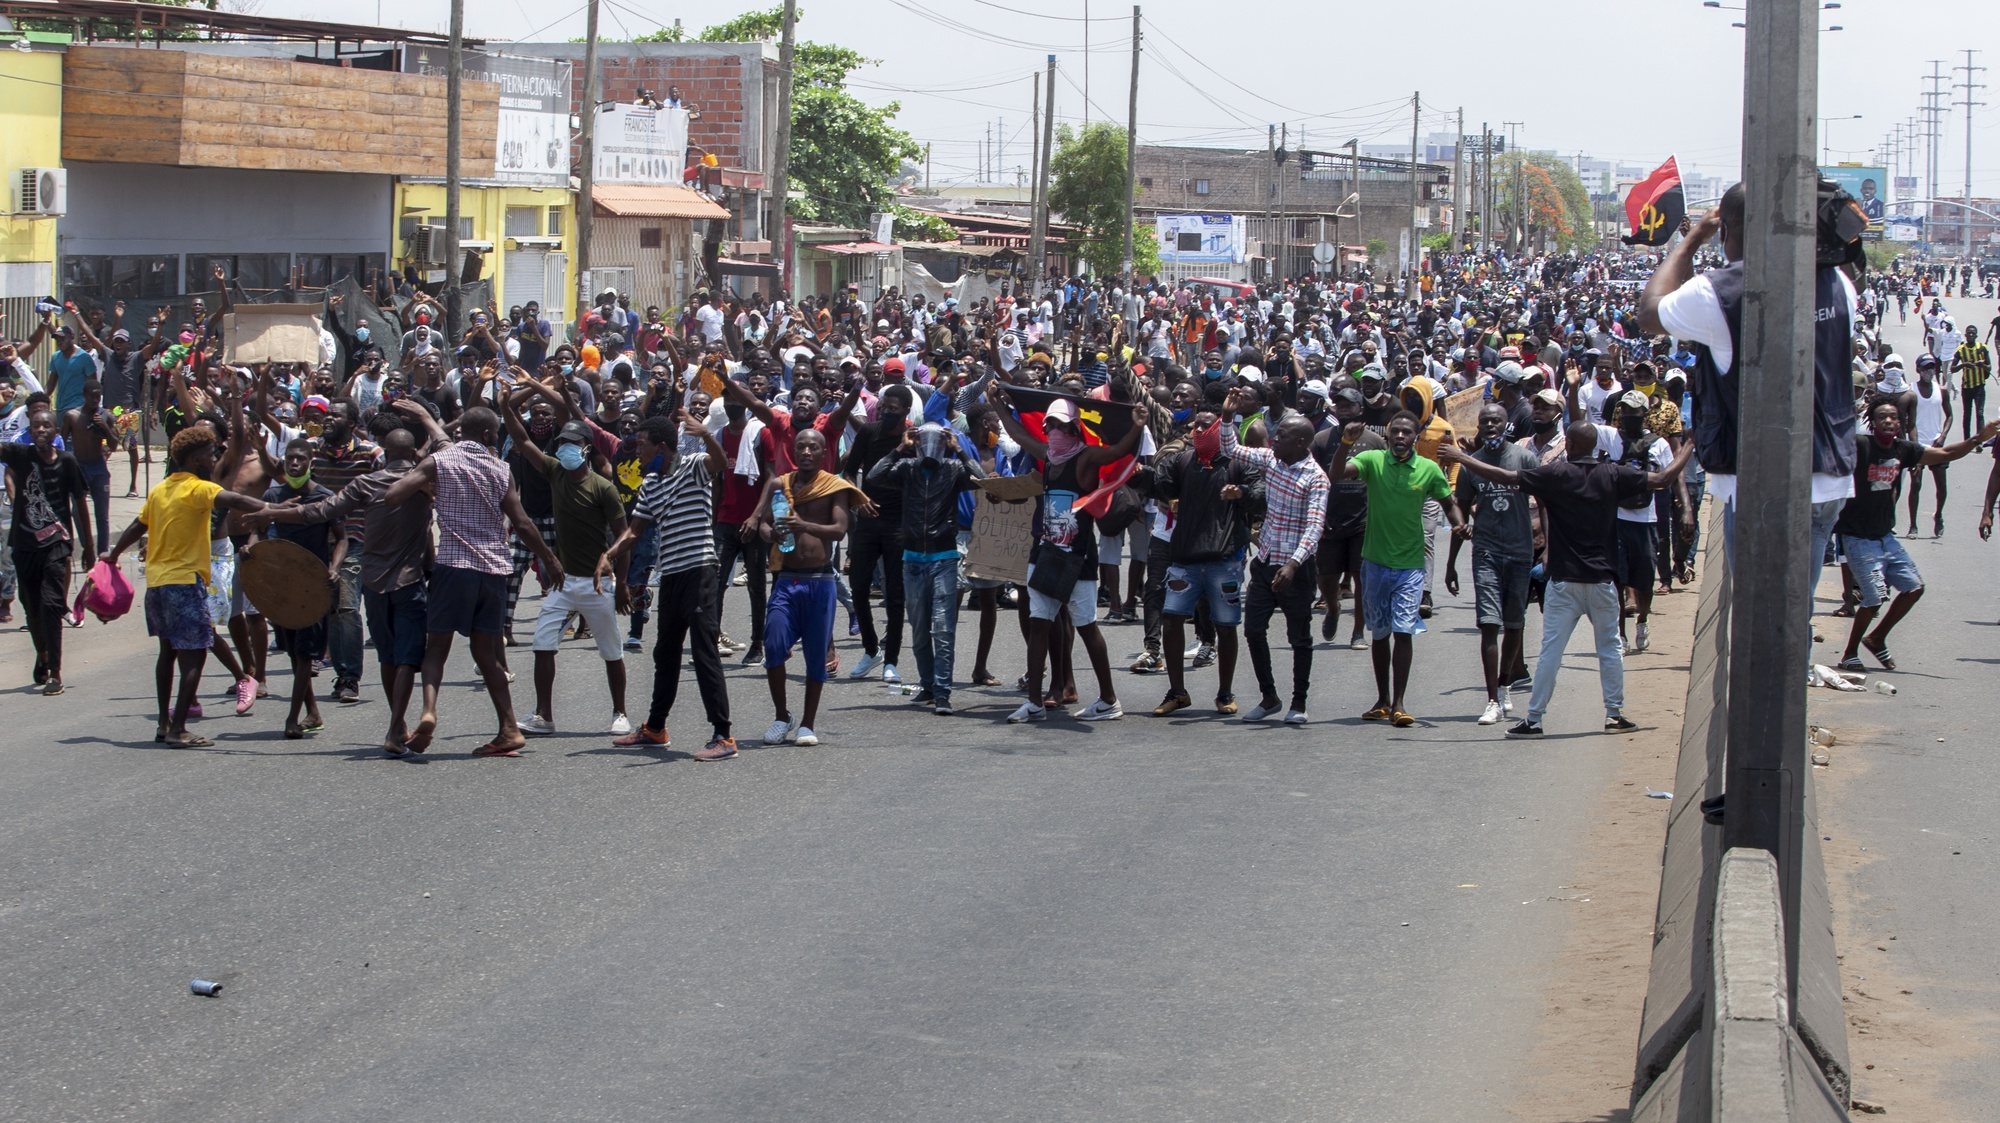 Centenas de jovens tentaram hoje sair à rua em Luanda para uma manifestação proibida pelas autoridades angolanas, que os persegue pelos bairros adjacentes na estrada de Catete. Antes das 11:00, hora para que estava agendada a manifestação proibida, os jovens tentaram aproximar-se do local combinado, junto ao cemitério de Santa Ana, de onde deveriam sair em direção ao centro da cidade, mas foram impedidos pelas barreiras que a polícia havia instalado na zona. Gritando palavras de ordem como “a polícia é do povo não é do MPLA” ou cantando o hino nacional angolano numa atitude de confronto com as autoridades, os jovens foram alvo de cargas policiais, com recurso a balas de borracha e gás lacrimogéneo, e fugiram para os bairros adjacentes da zona, 11 de novembro de 2020, Luanda, Angola. FOTO LUSA